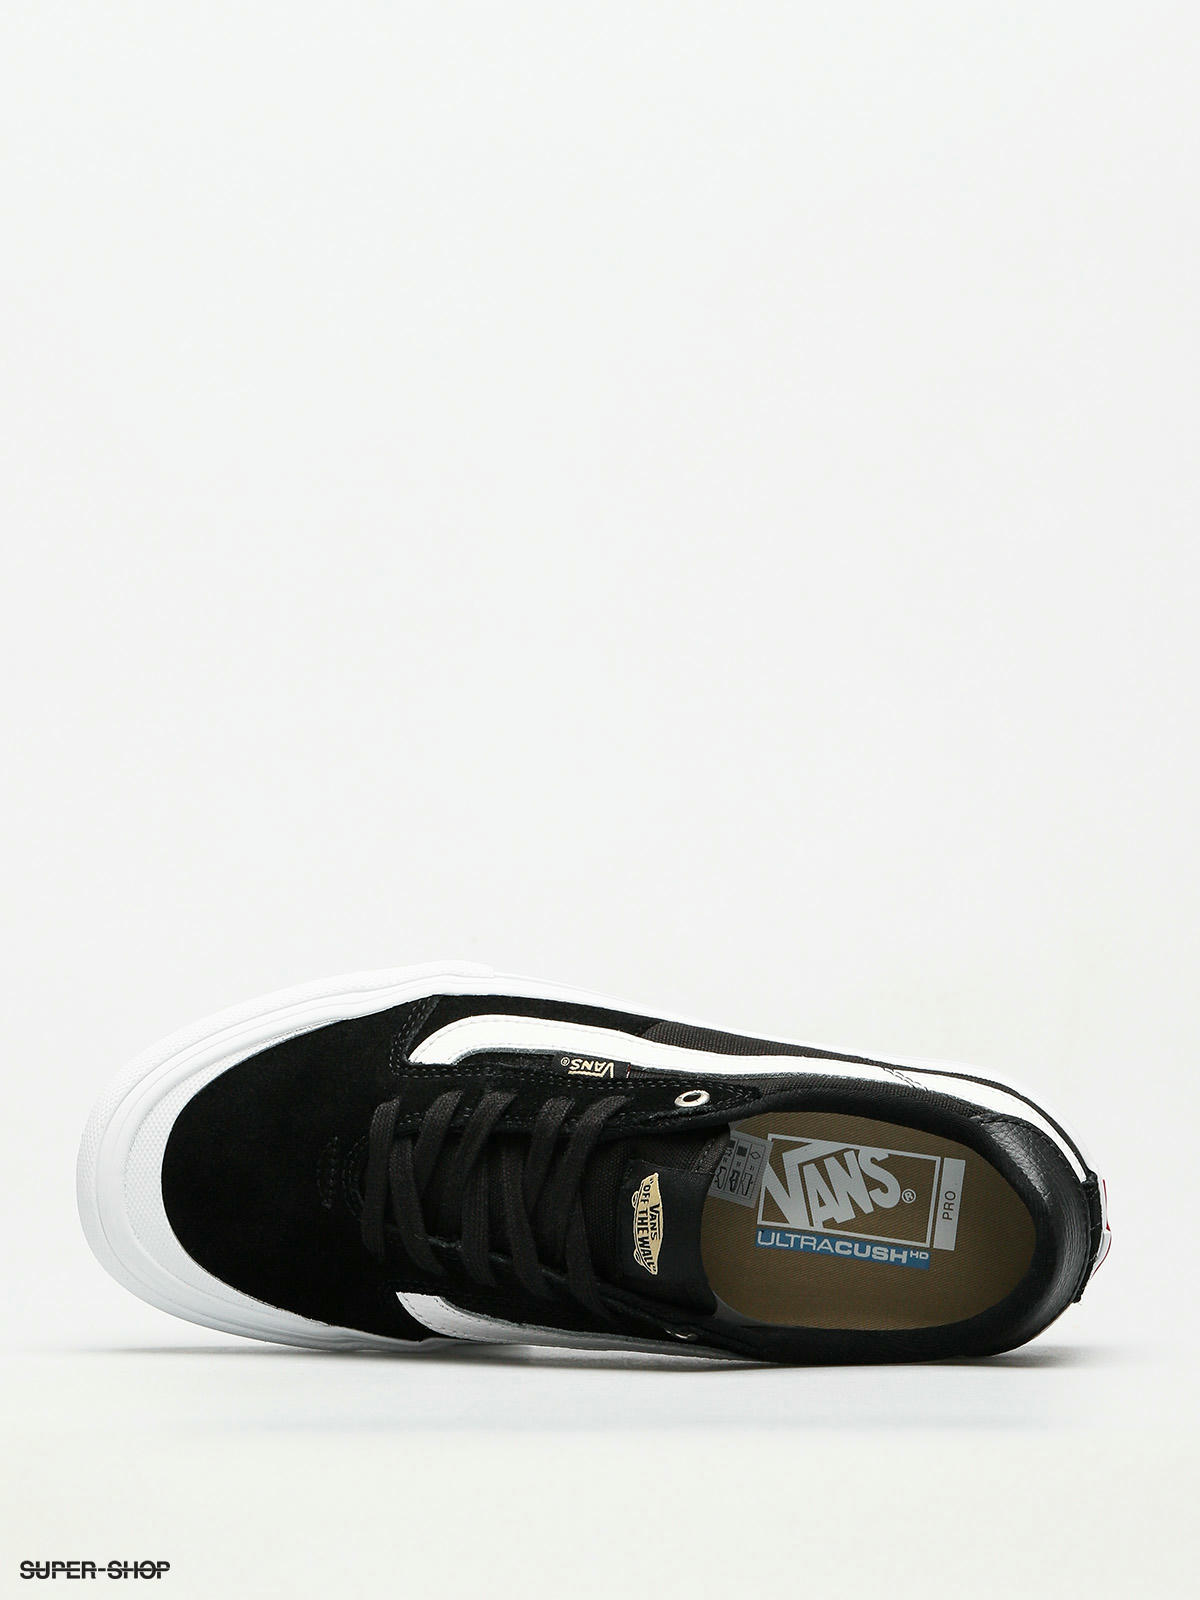 Vans Shoes Style 112 Pro (black/white 